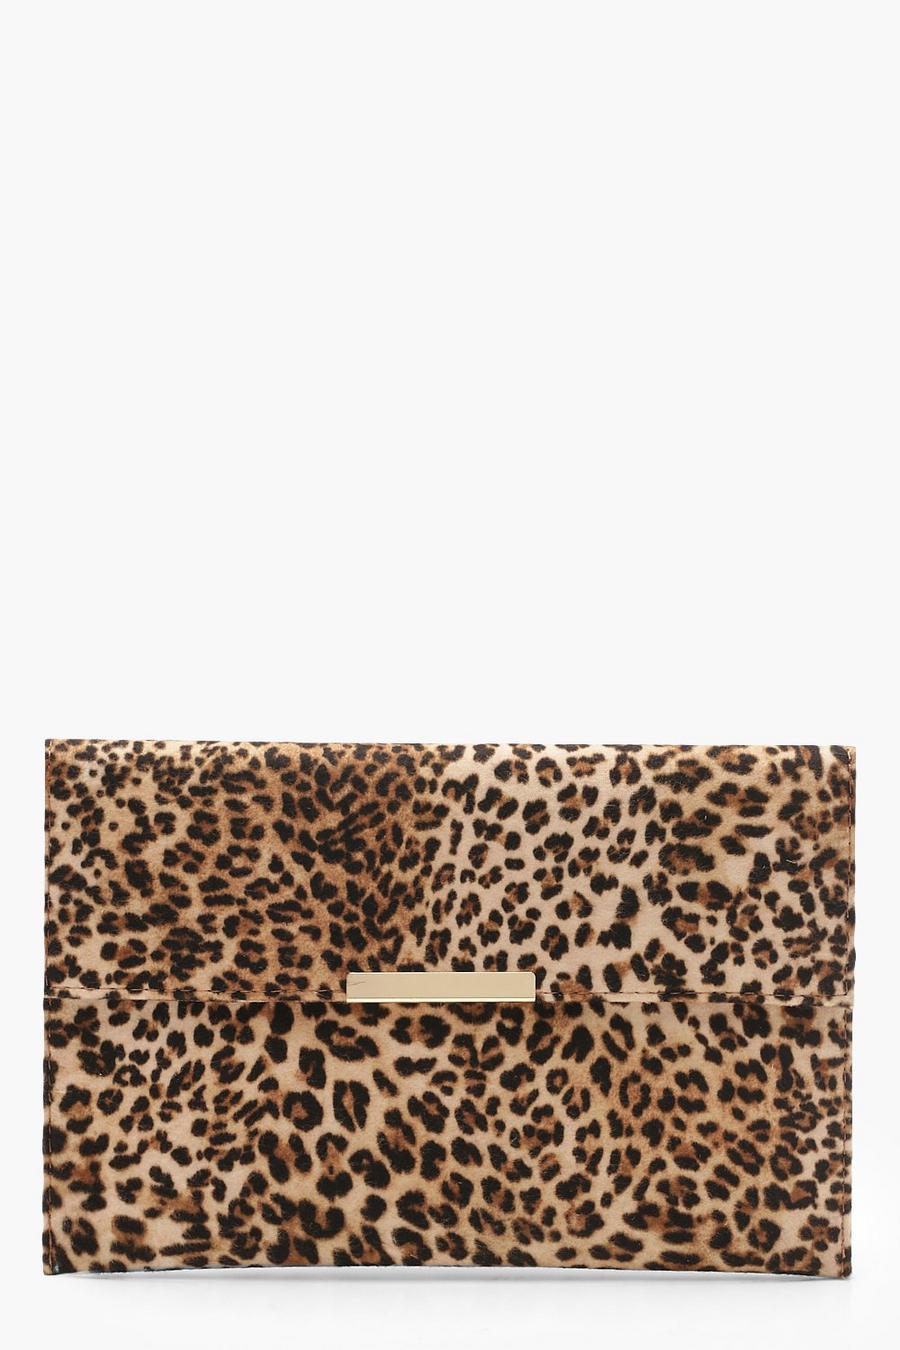 Clutch-Tasche mit Leopardenprint, Naturfarben beige